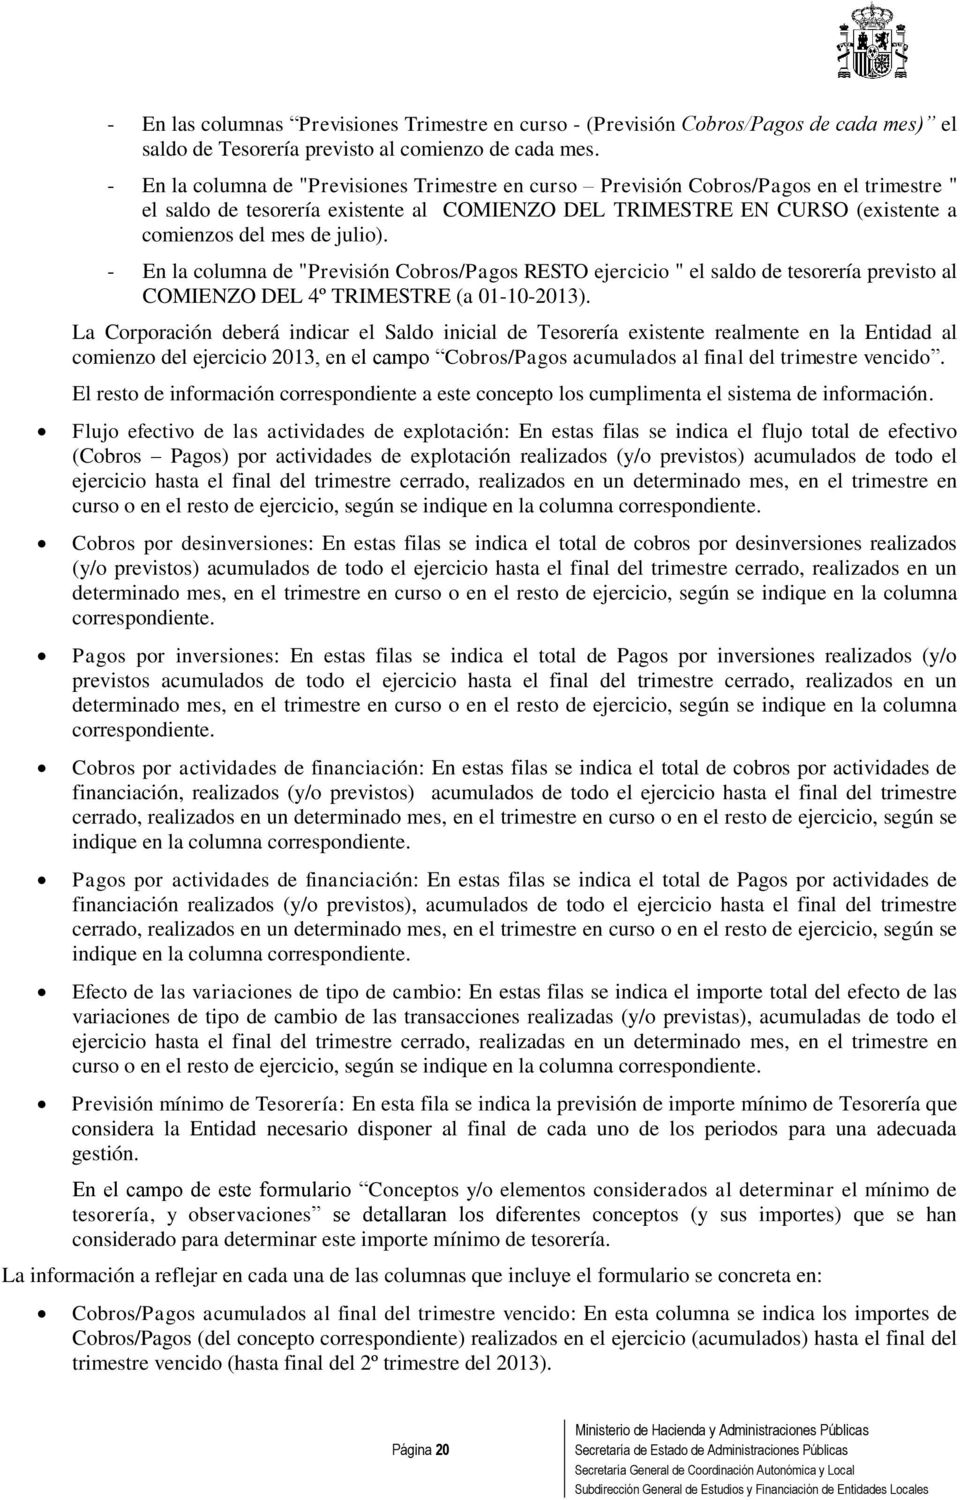 - En la columna de "Previsión Cobros/Pagos RESTO ejercicio " el saldo de tesorería previsto al COMIENZO DEL 4º TRIMESTRE (a 01-10-2013).